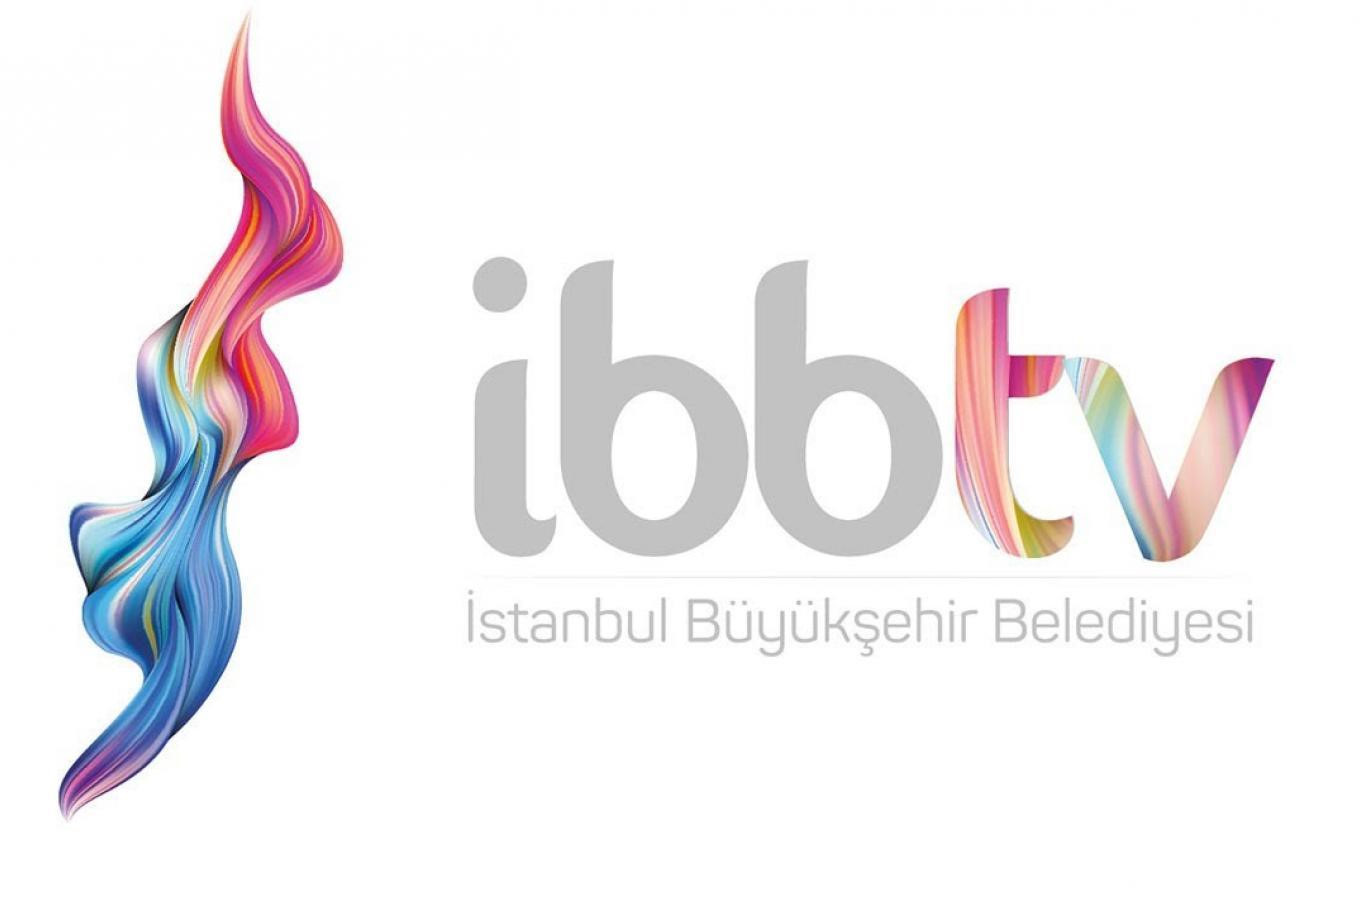 İBB TV'nin logosunun yerine yerleştirilen logo. 